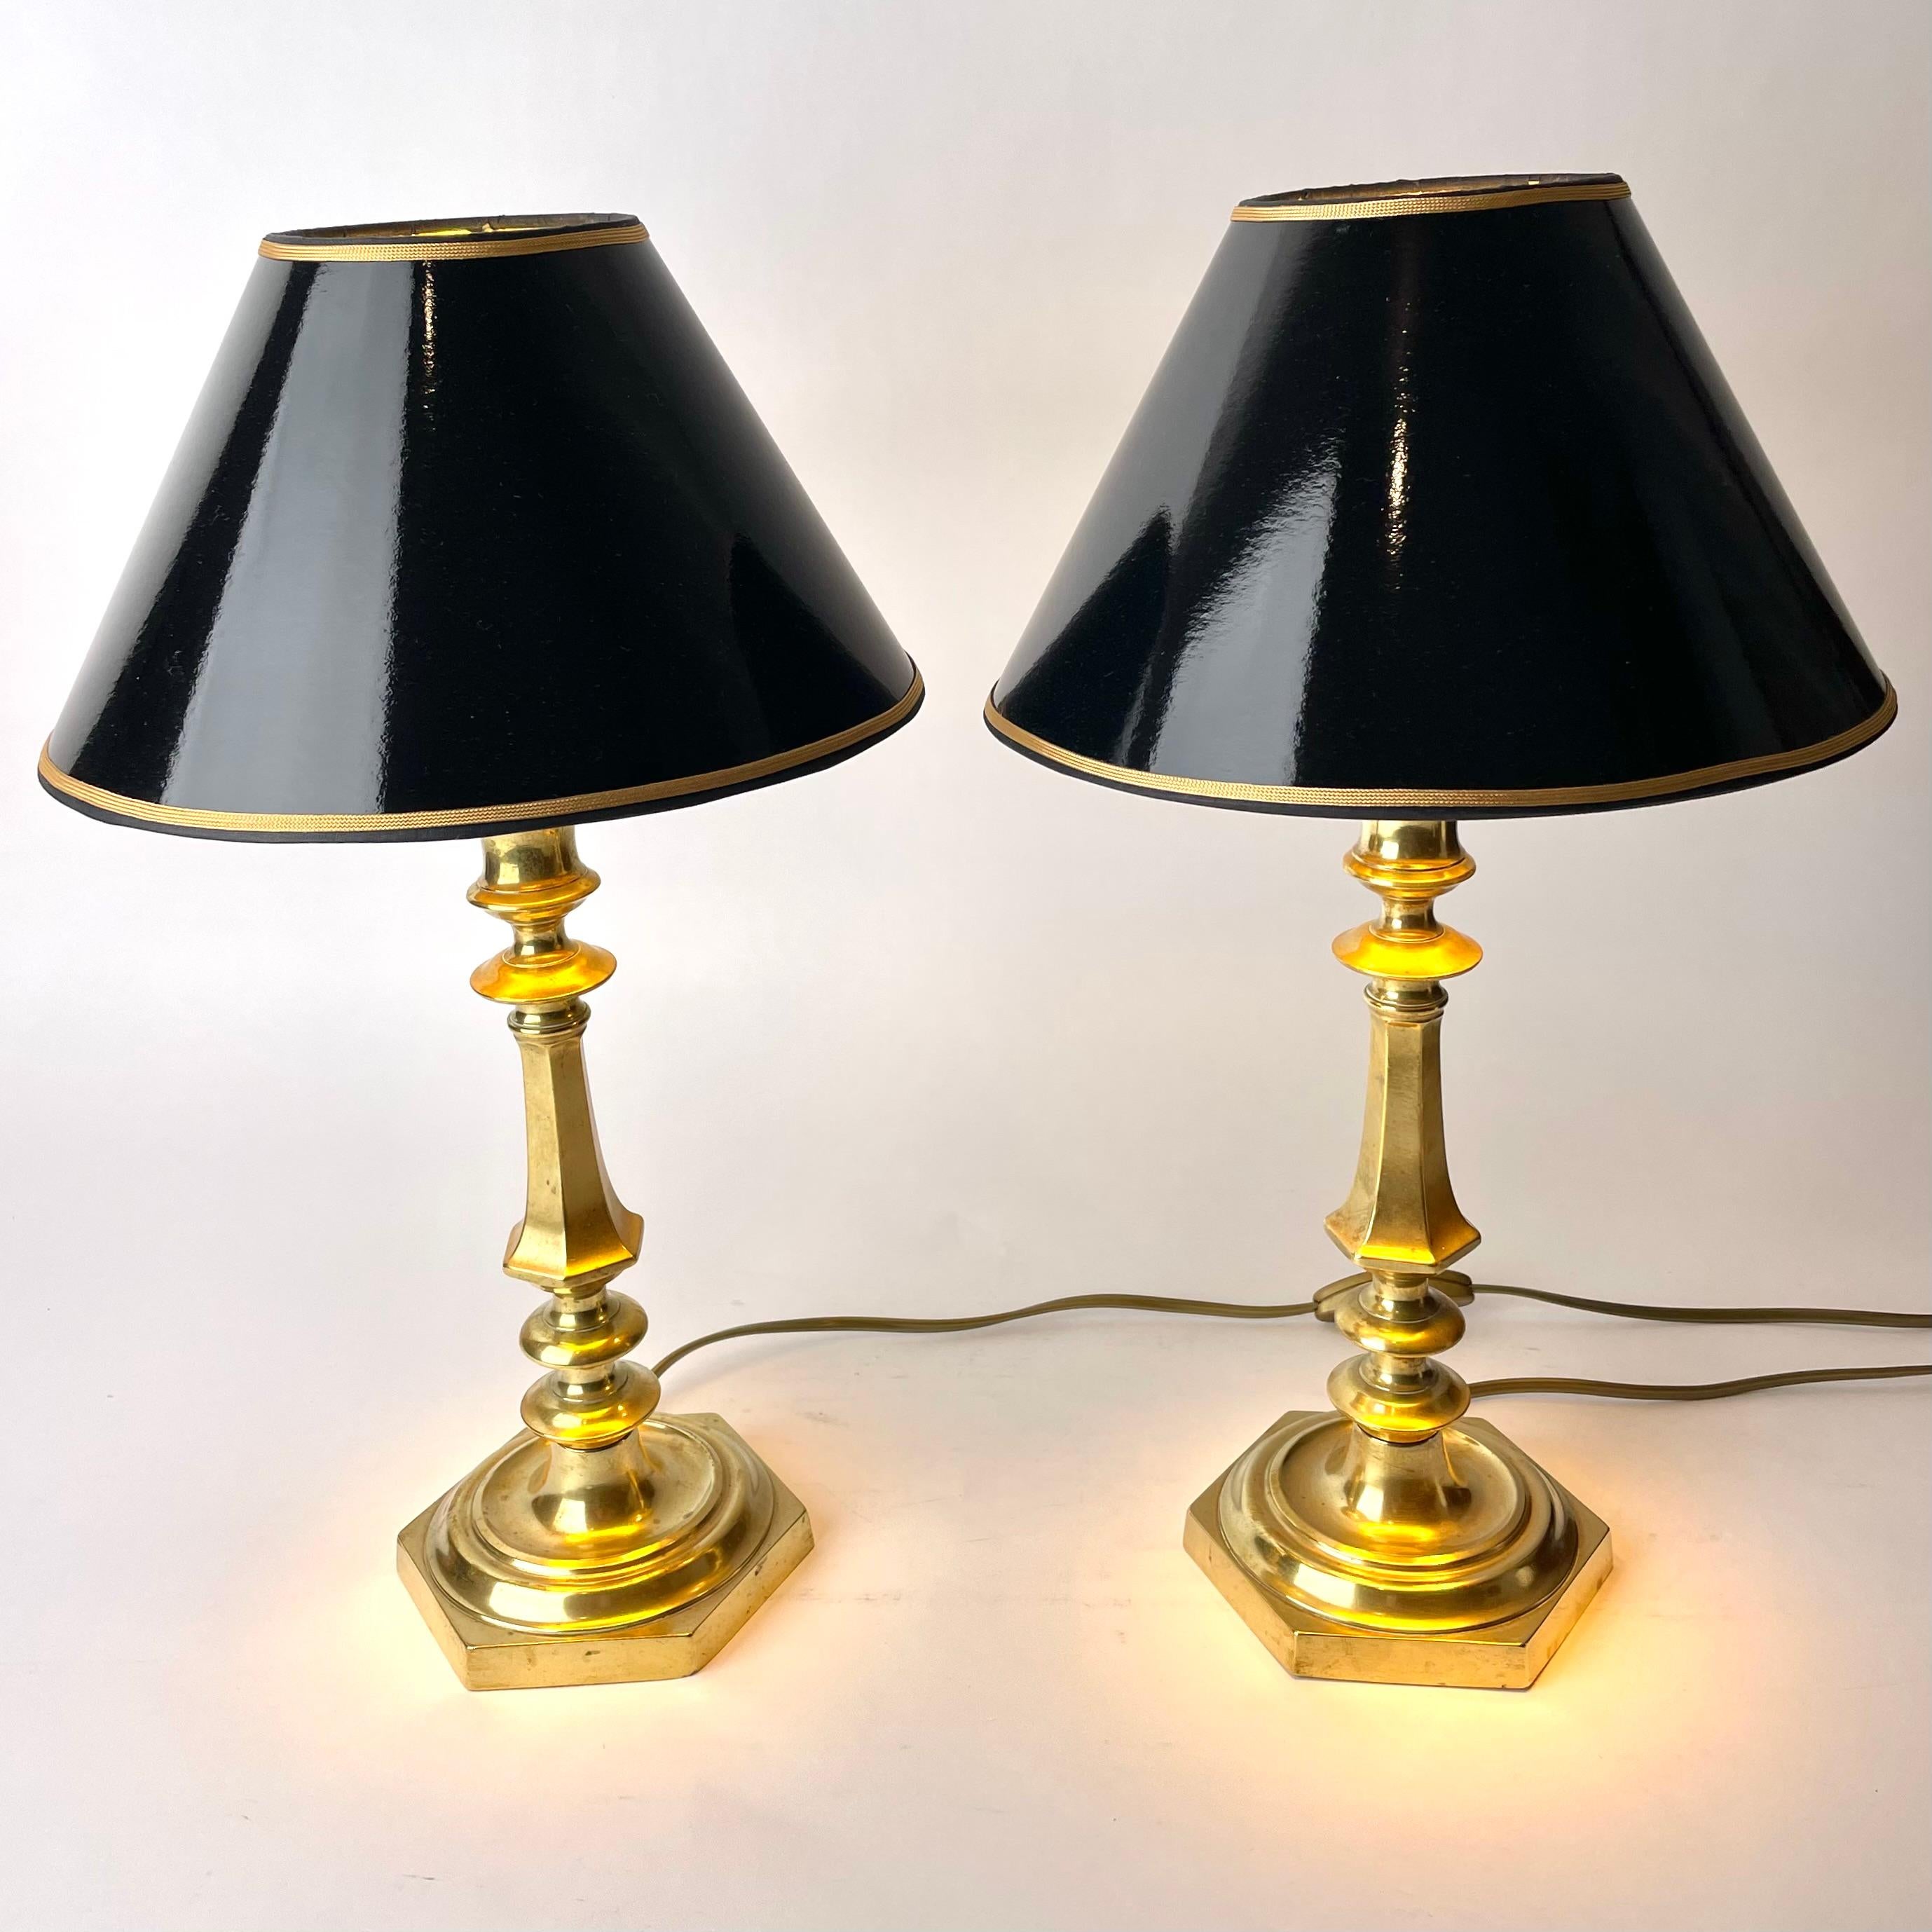 Elegante paire de lampes de table hexagonales en bronze du milieu du 19e siècle. Il s'agissait à l'origine d'une paire de chandeliers transformés en lampes de table au début du 20e siècle.

Électricité refaite à neuf 

 Nouveaux abat-jour en laque